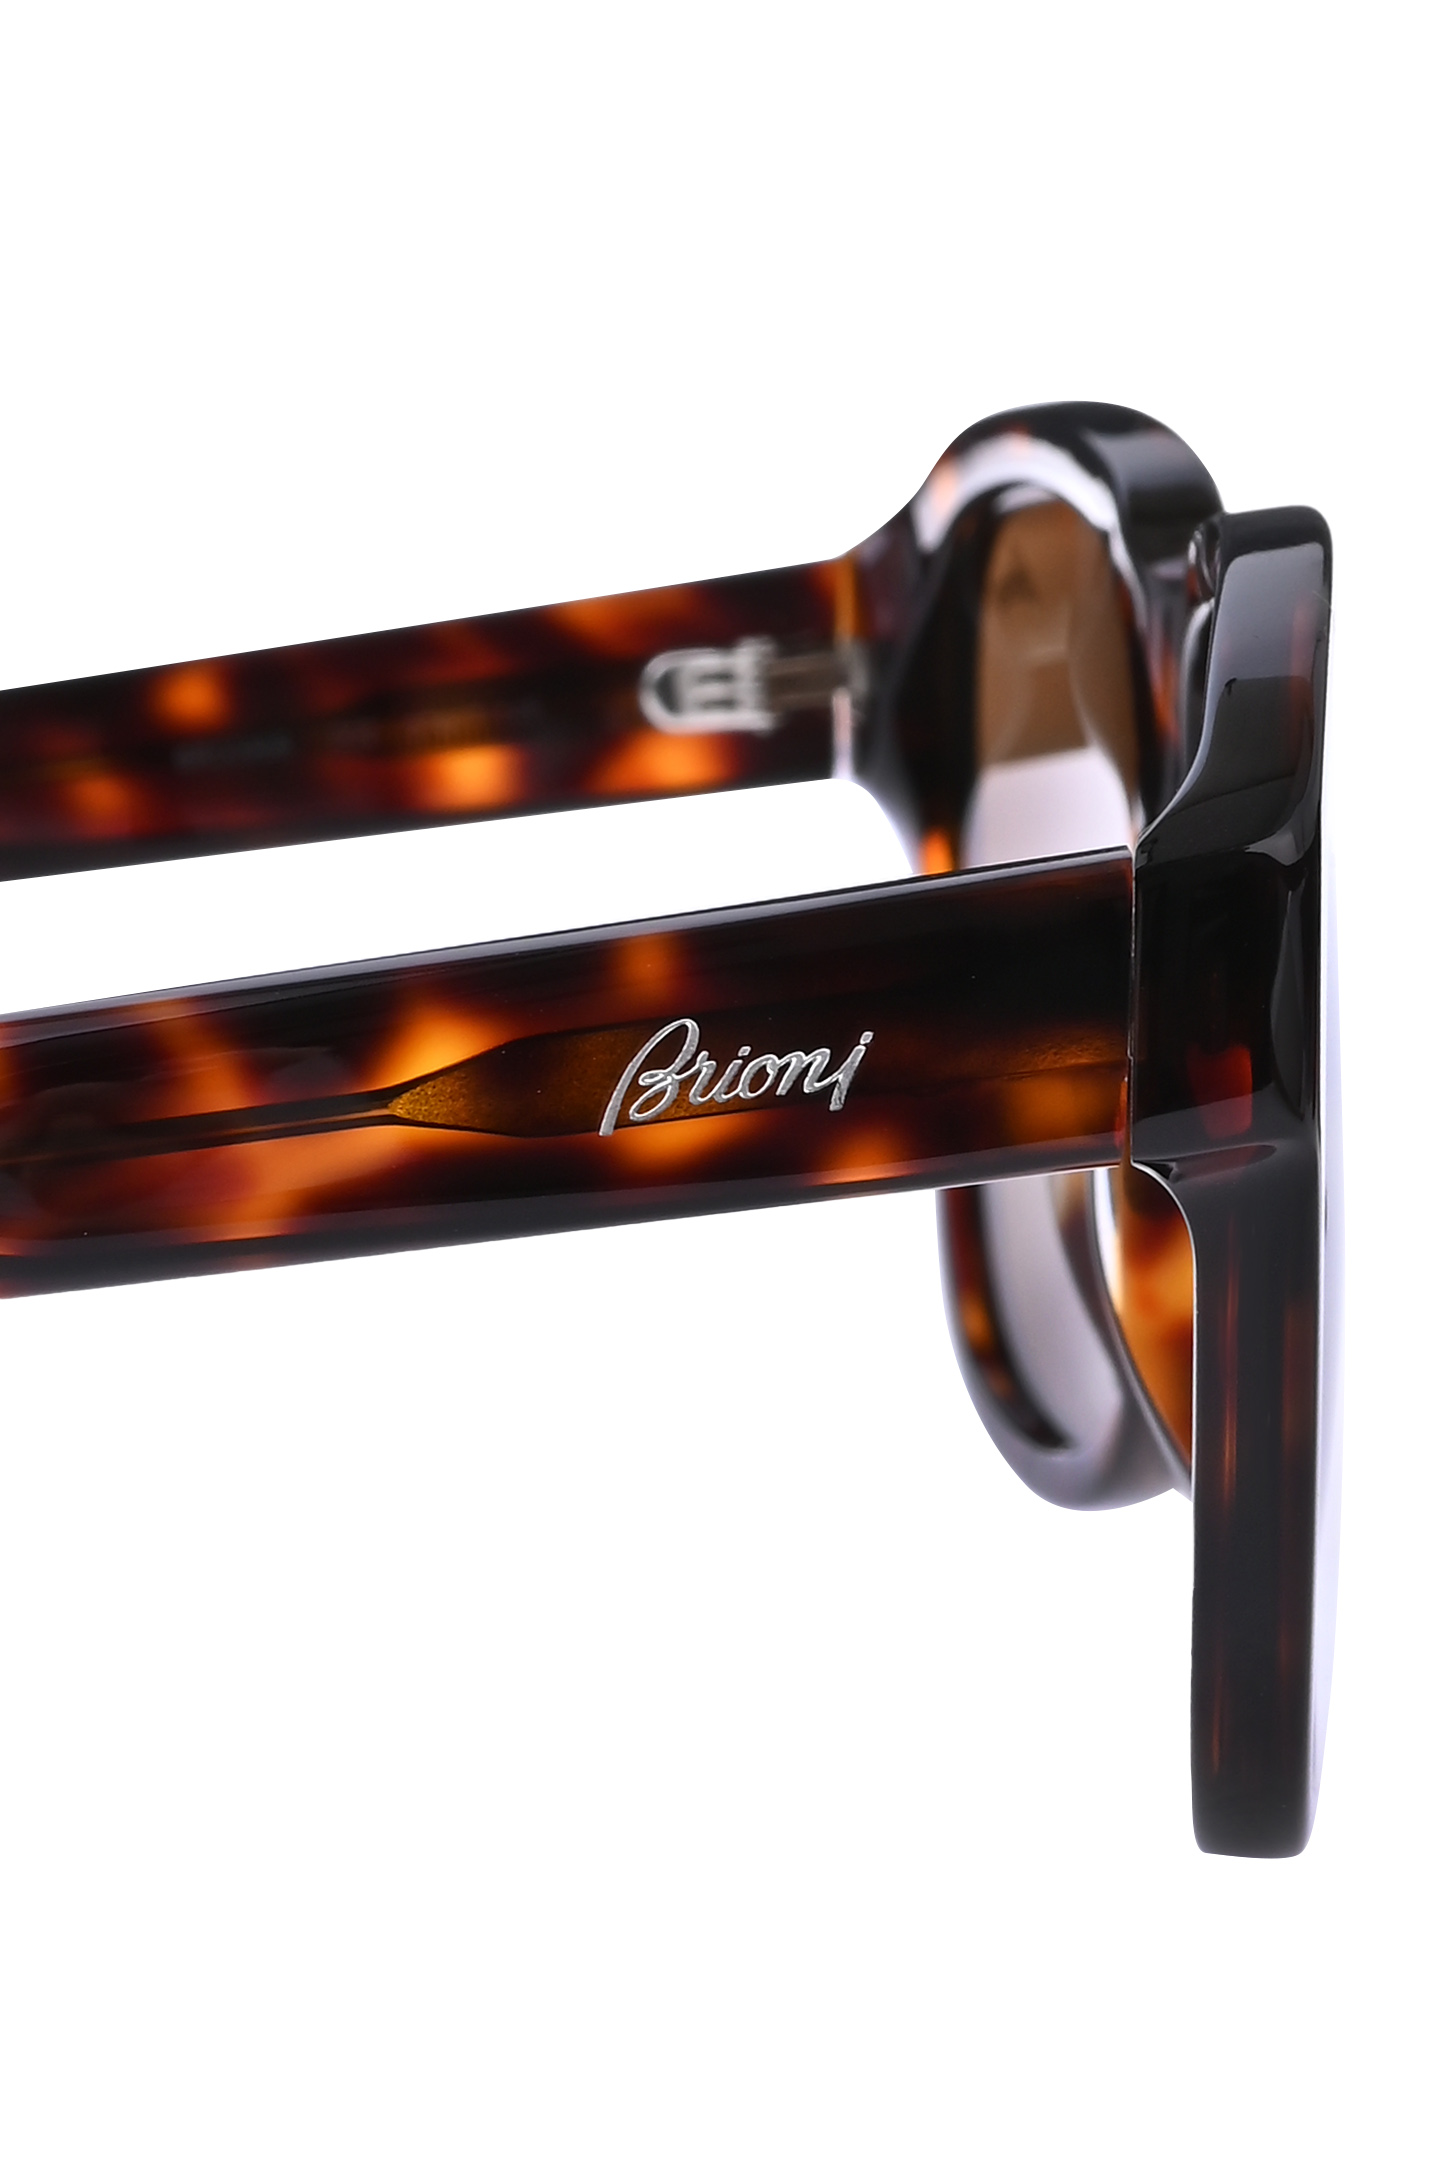 Солнцезащитные очки BRIONI ODE300 P3ZAC, цвет: Коричневый, Мужской